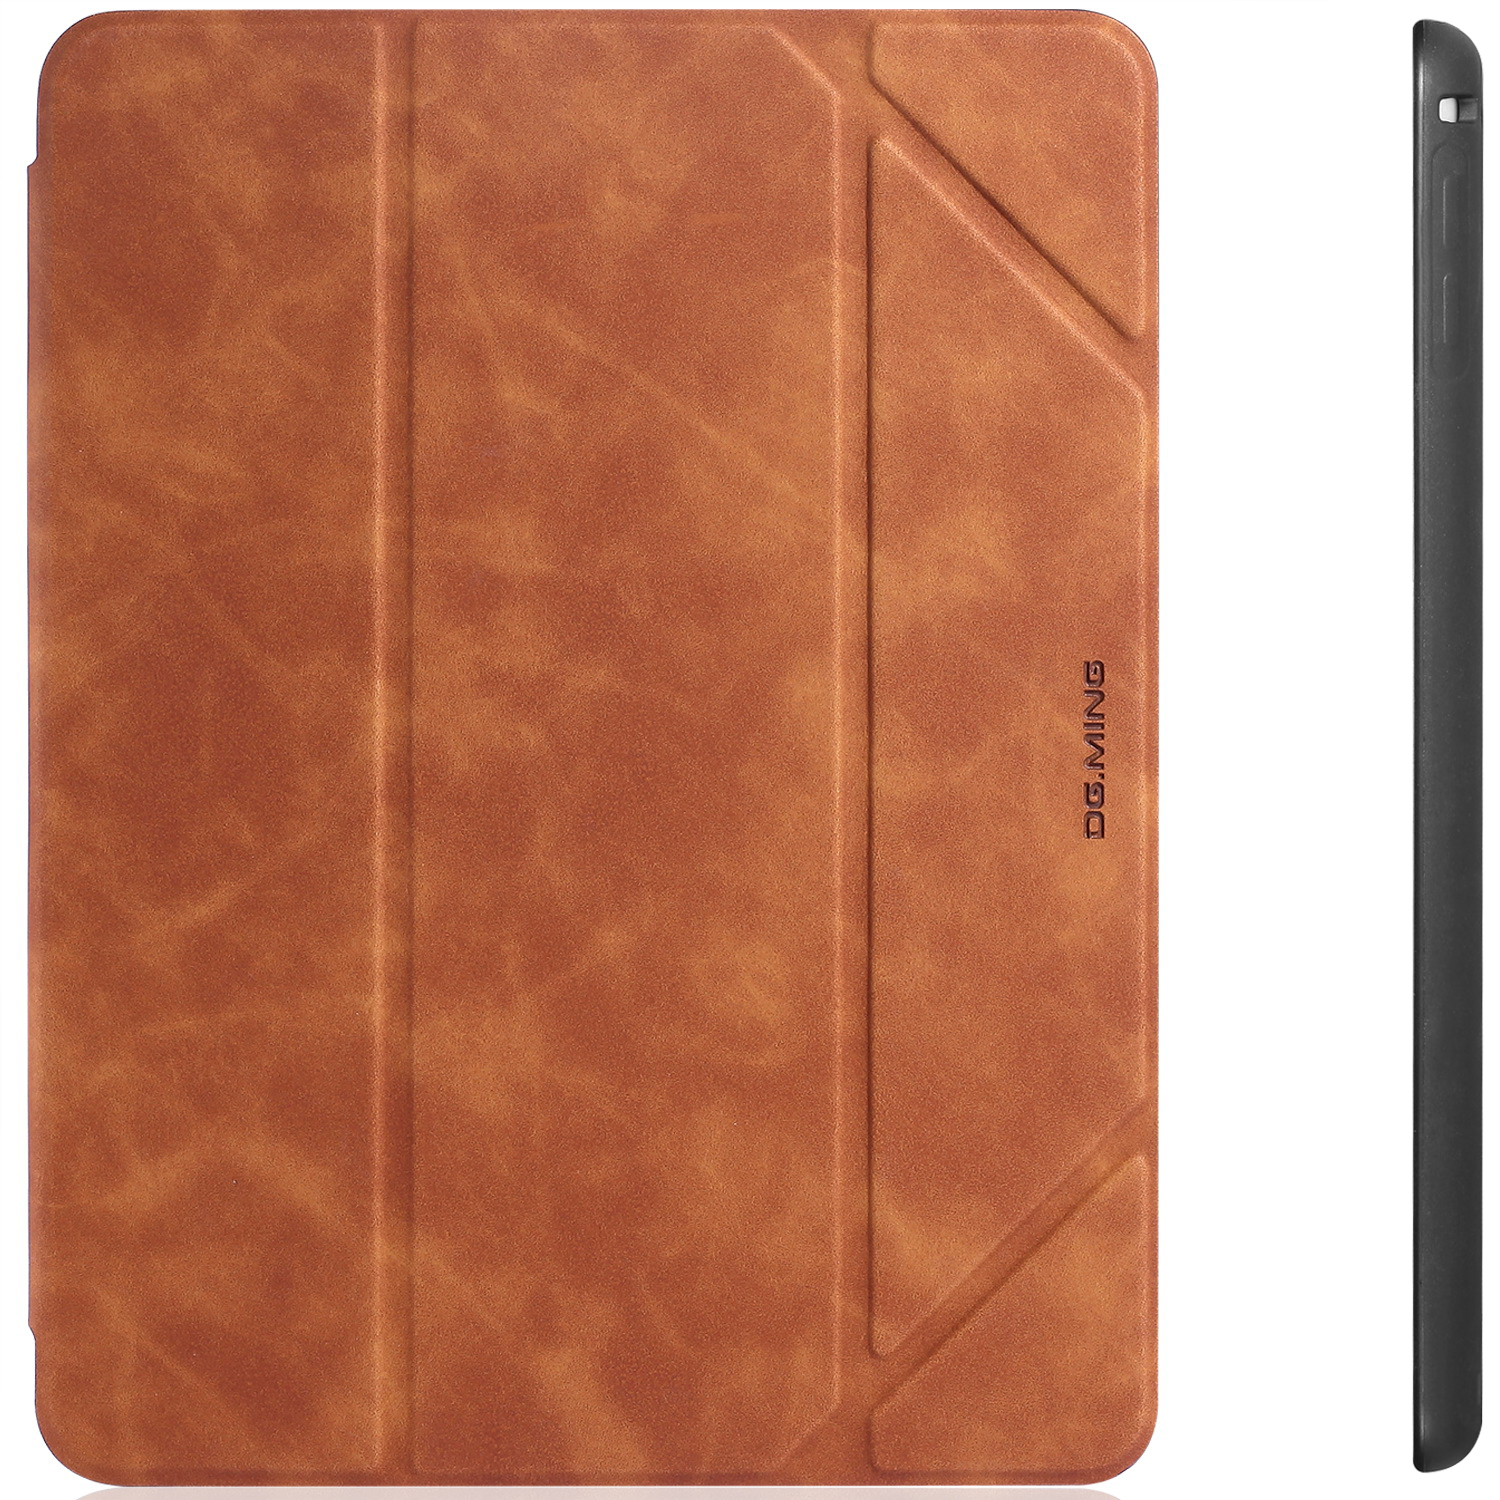 DG.MING Retro Style fodral till iPad Mini 4/5, brun